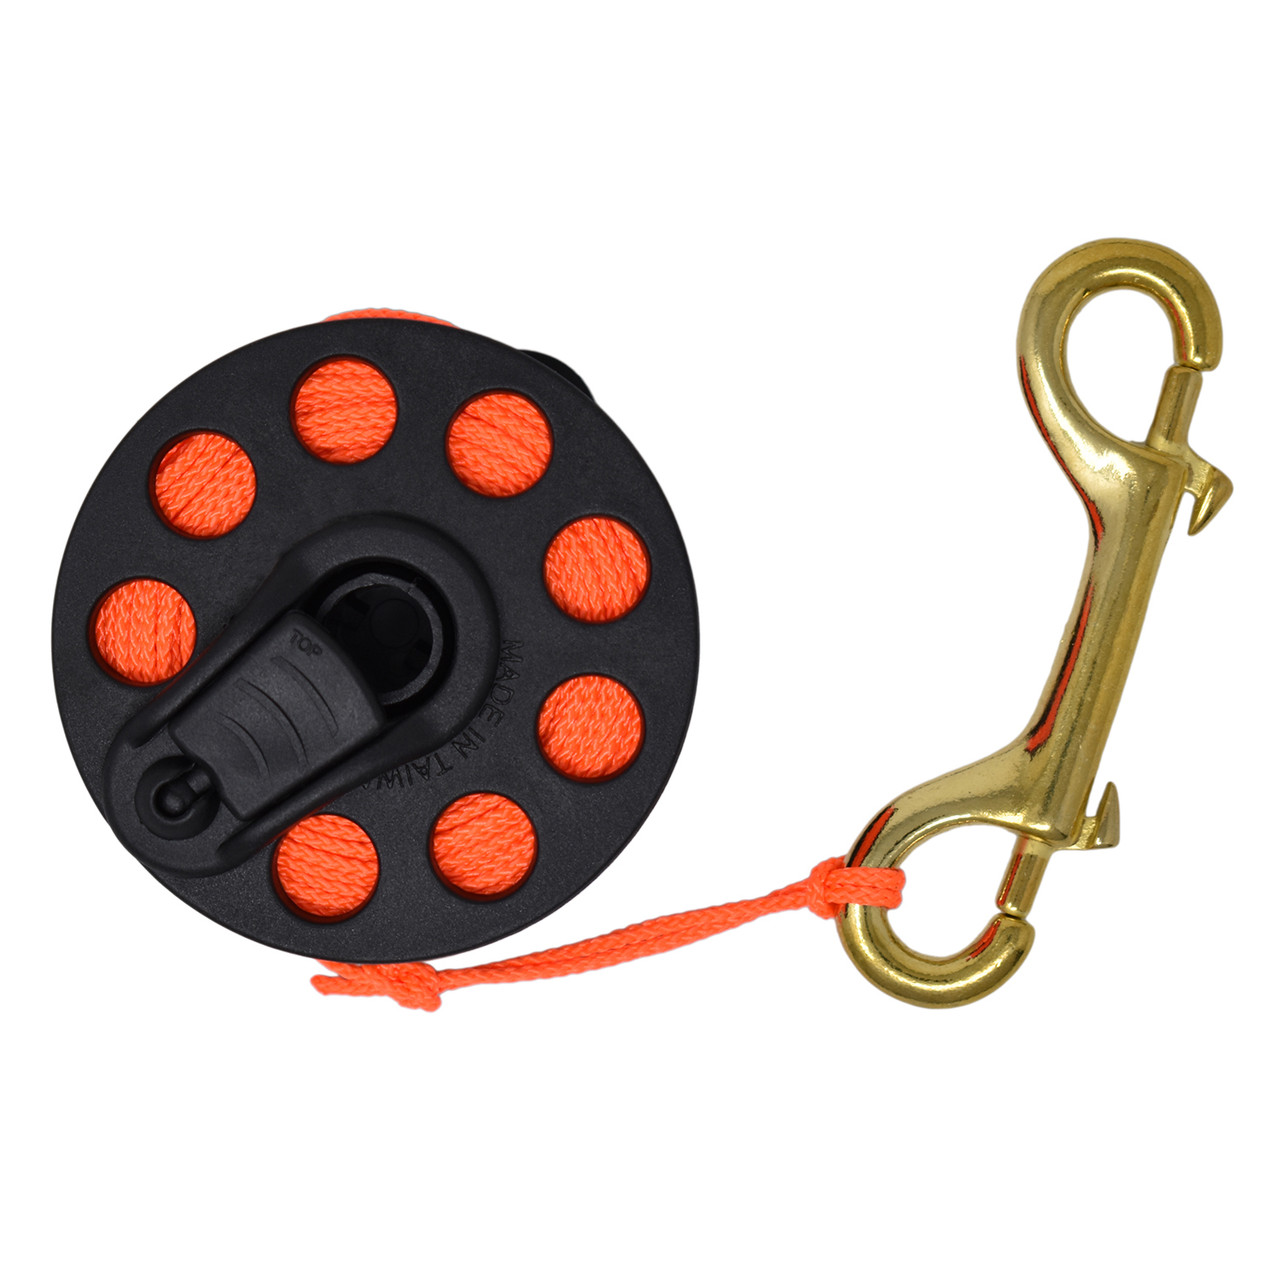 Scuba Choice Scuba Diving Compact Finger Spool with Plastic Handle 65 Orange Line